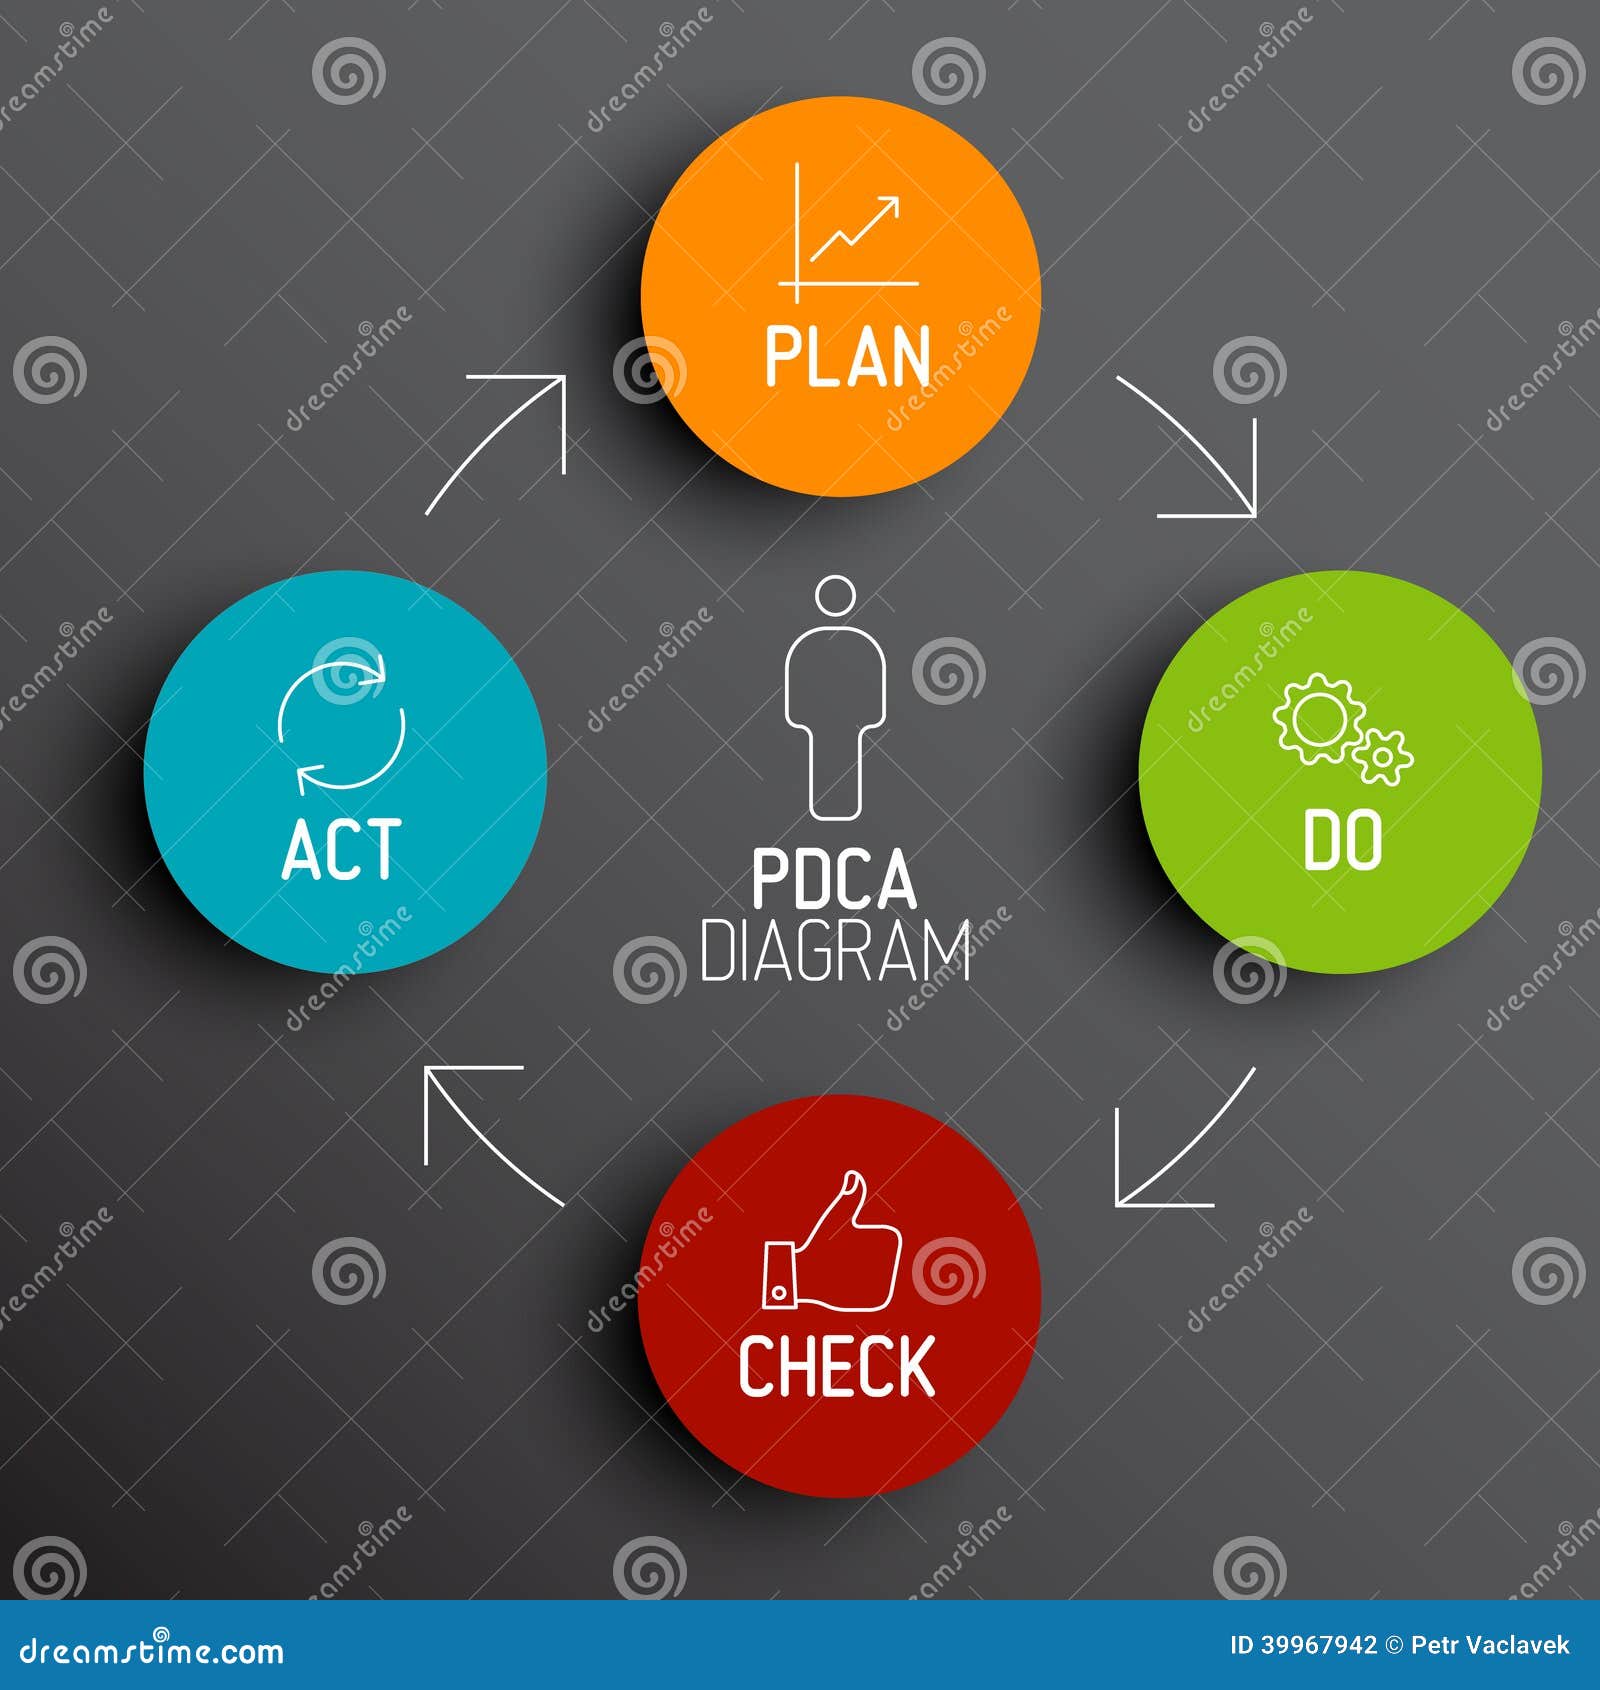  pdca (plan do check act) diagram / schema